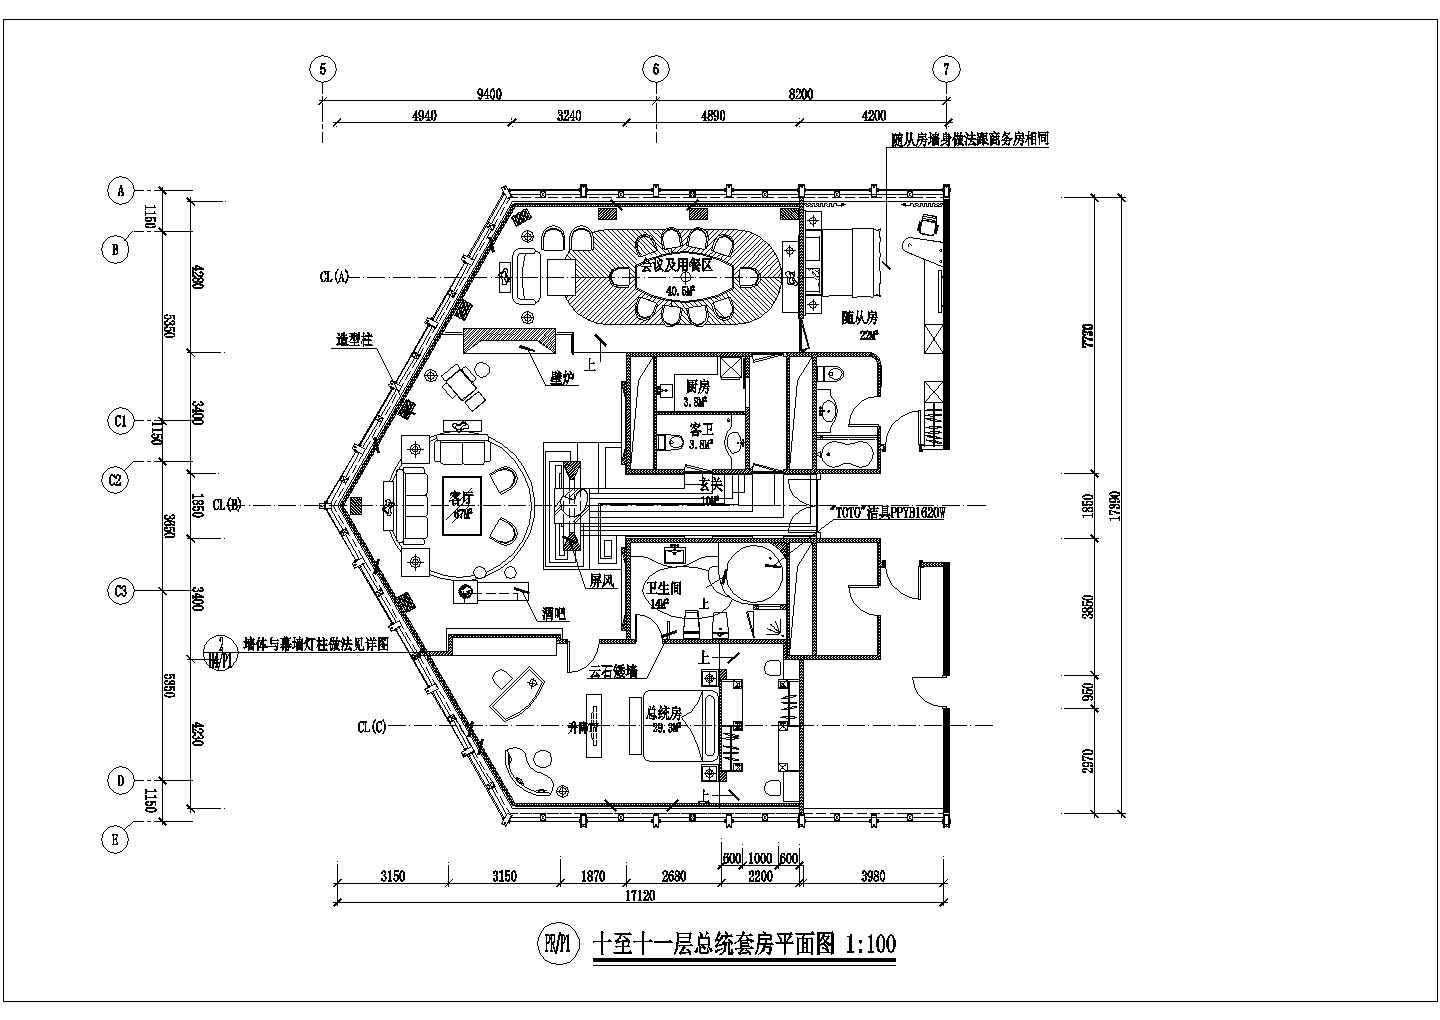 【江苏省】南京市市区某酒店总统套房平面图